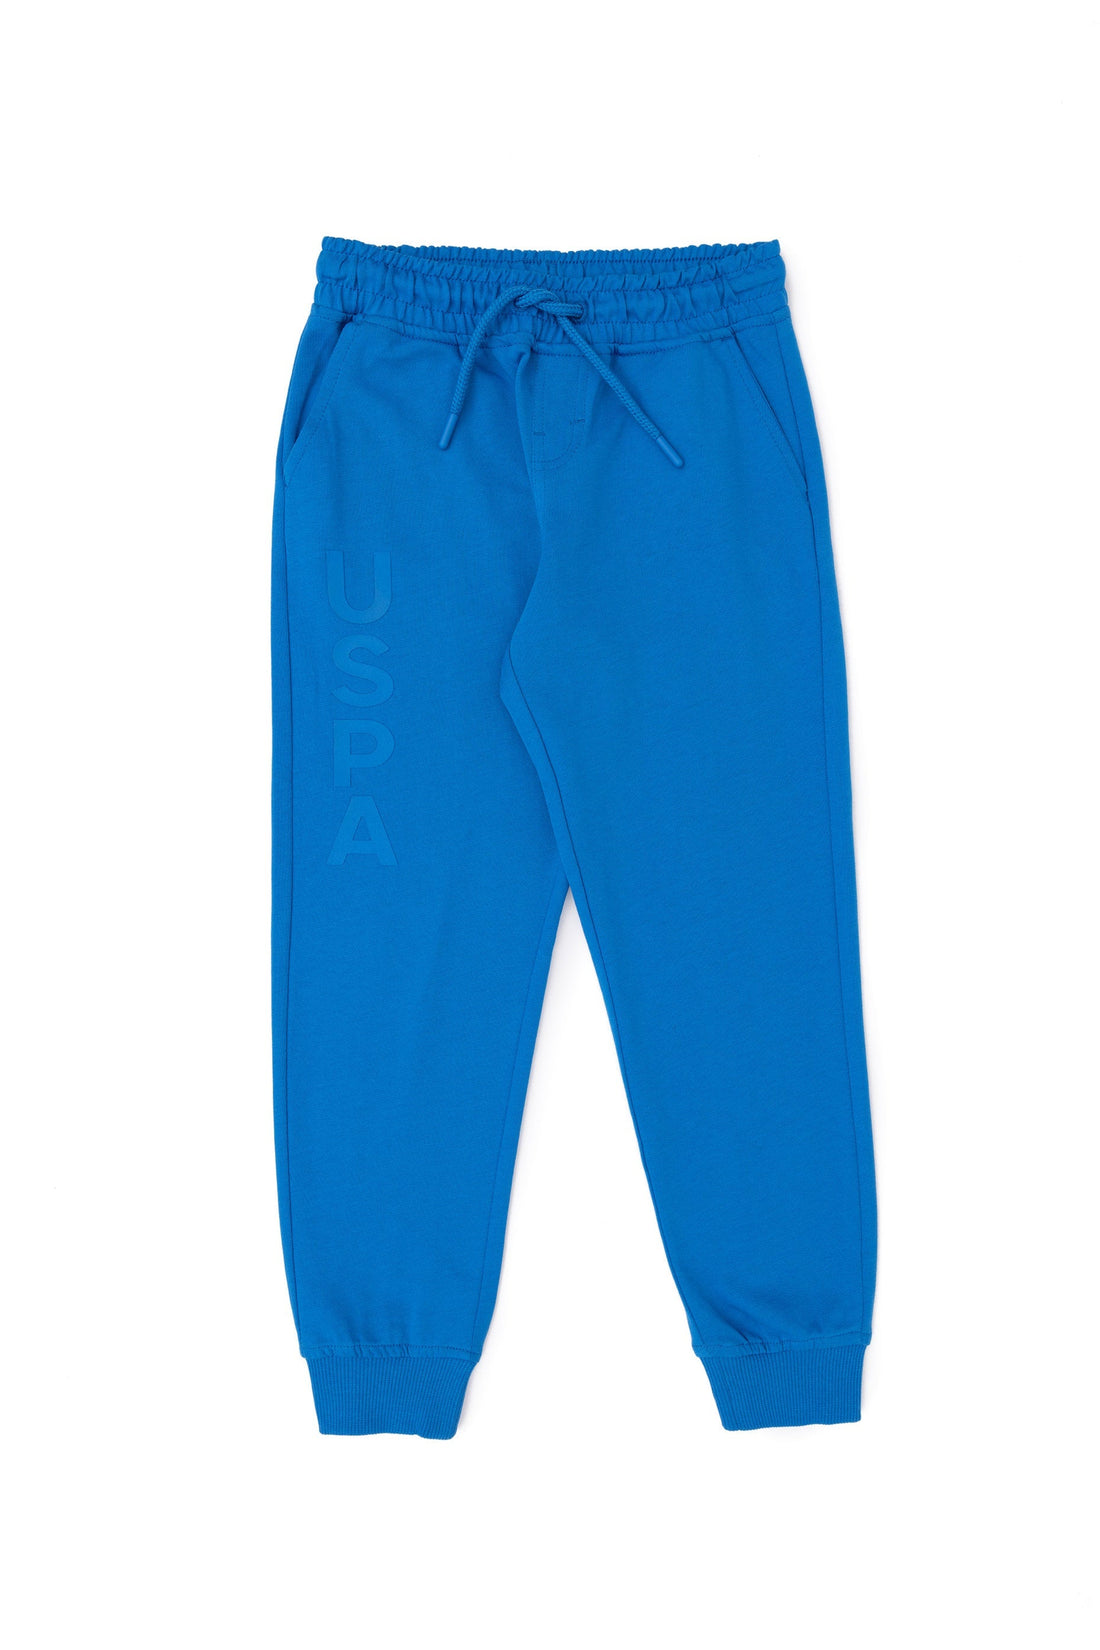 Boys Blue Jersey Trousers_G083SZ0OP0 1796232_VR045_02